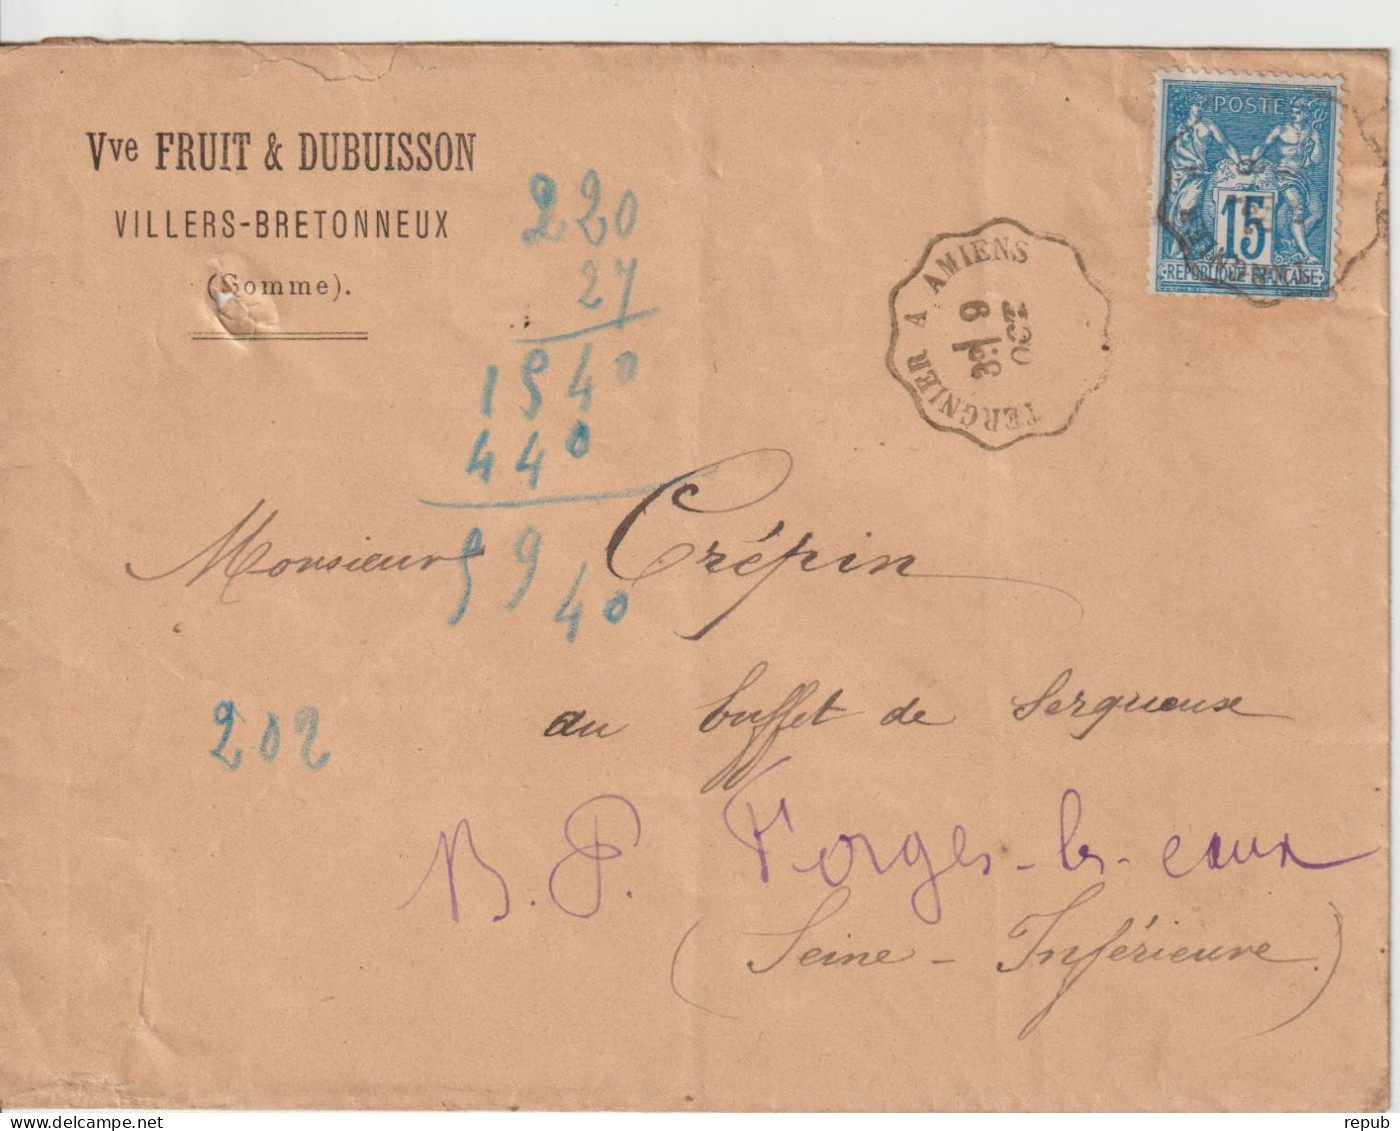 France Oblit Convoyeur Tergnier à Amiens 1881 - 1877-1920: Semi-moderne Periode